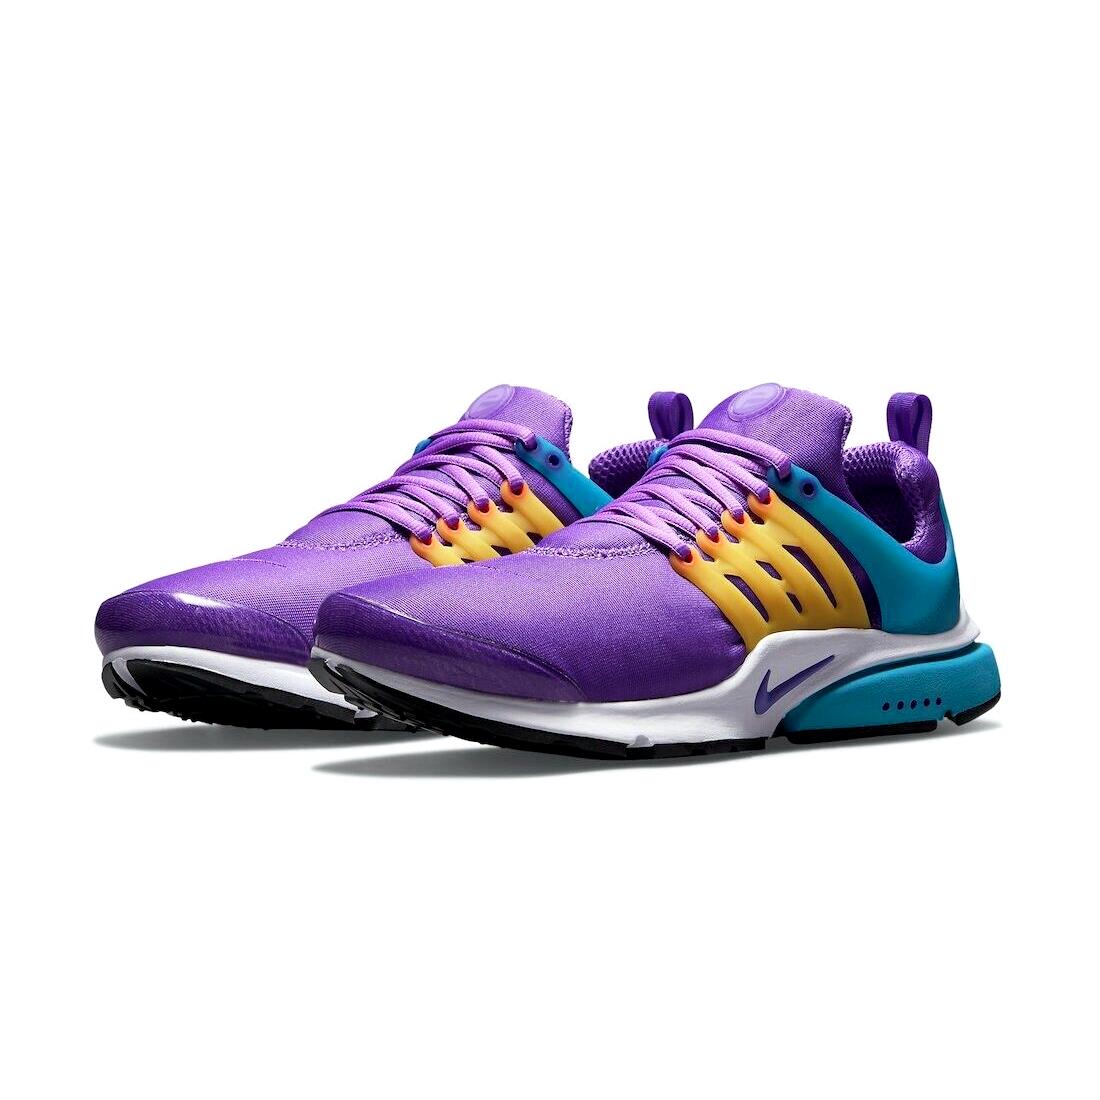 Nike Air Presto Mens Size 10 Sneaker Shoes CT3550 500 Wild Berry Fierce Purple